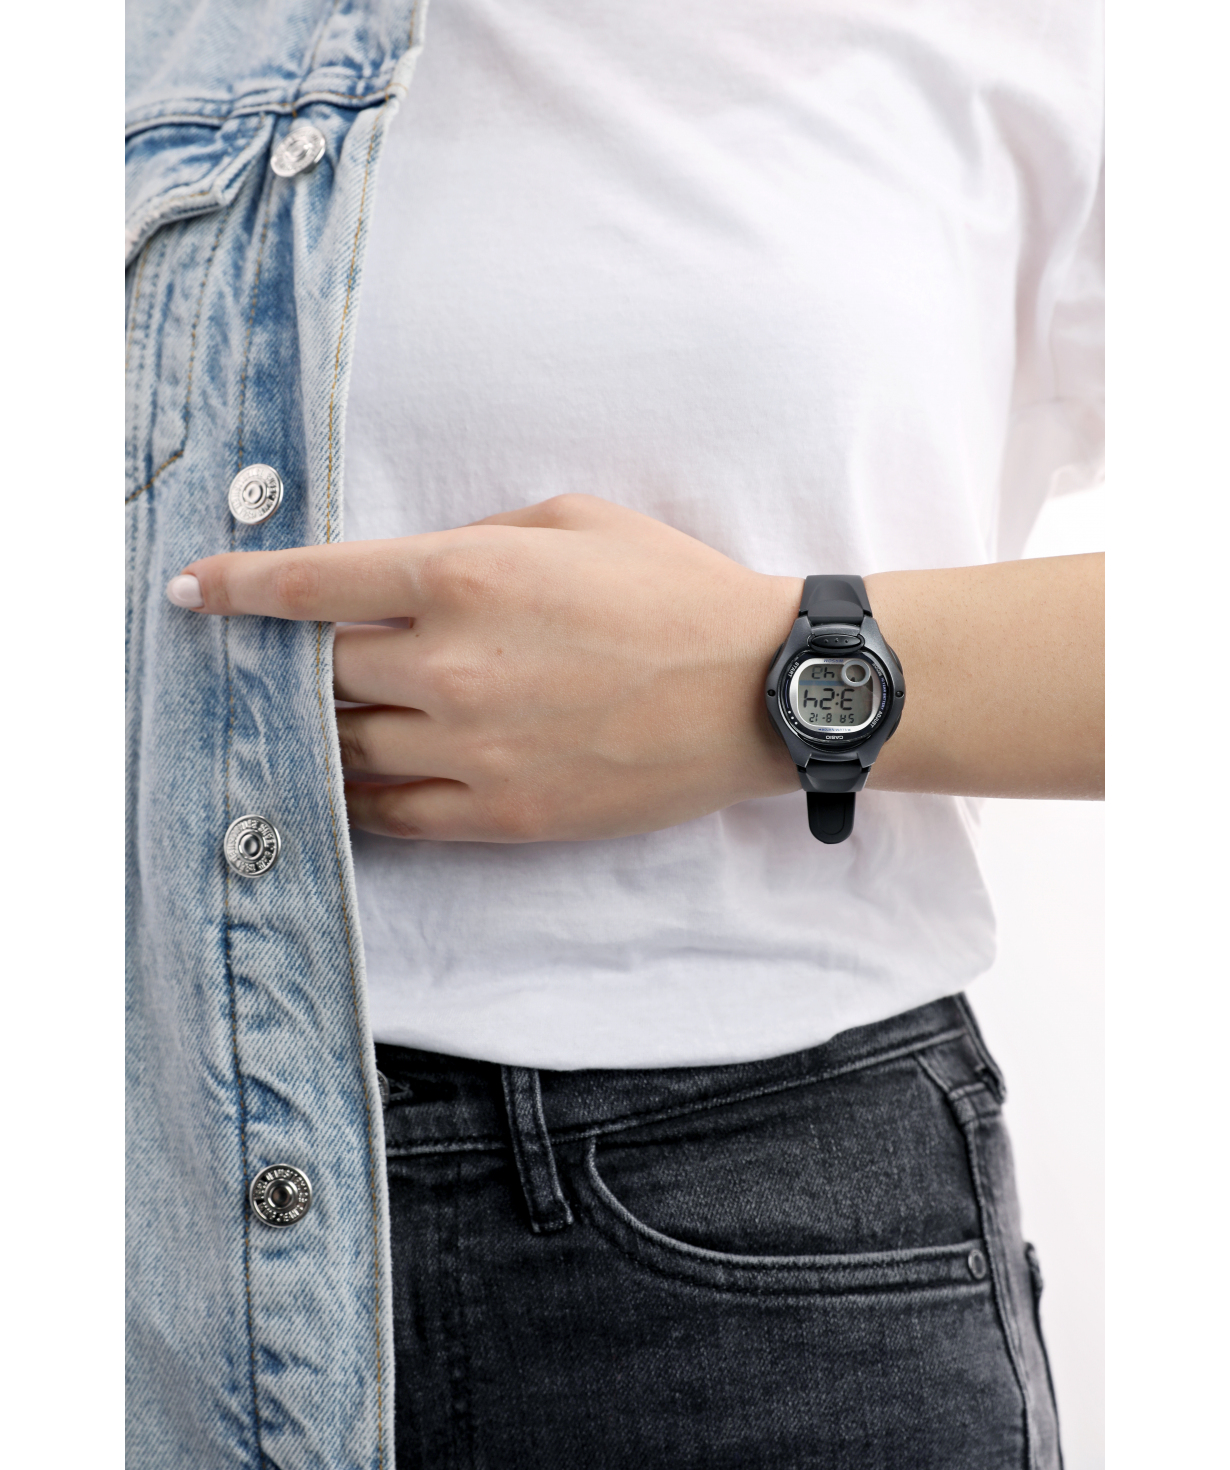 Ժամացույց  «Casio» ձեռքի  LW-200-1BVDF